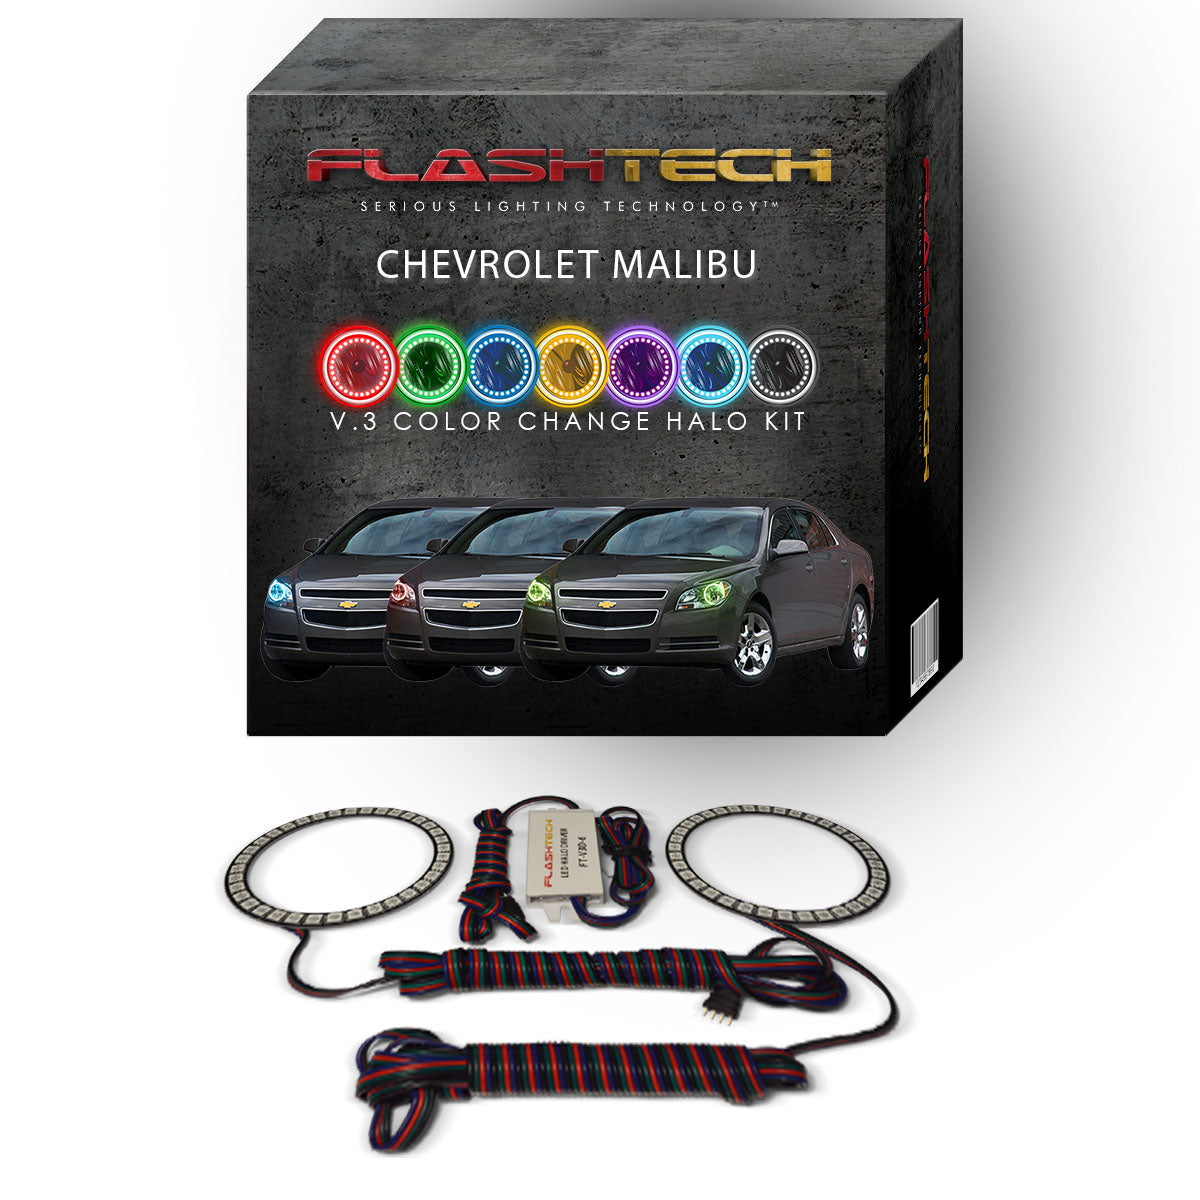 Chevrolet-Malibu-2008, 2009, 2010, 2011, 2012-LED-Halo-Headlights-RGB-No Remote-CY-MB0812-V3H